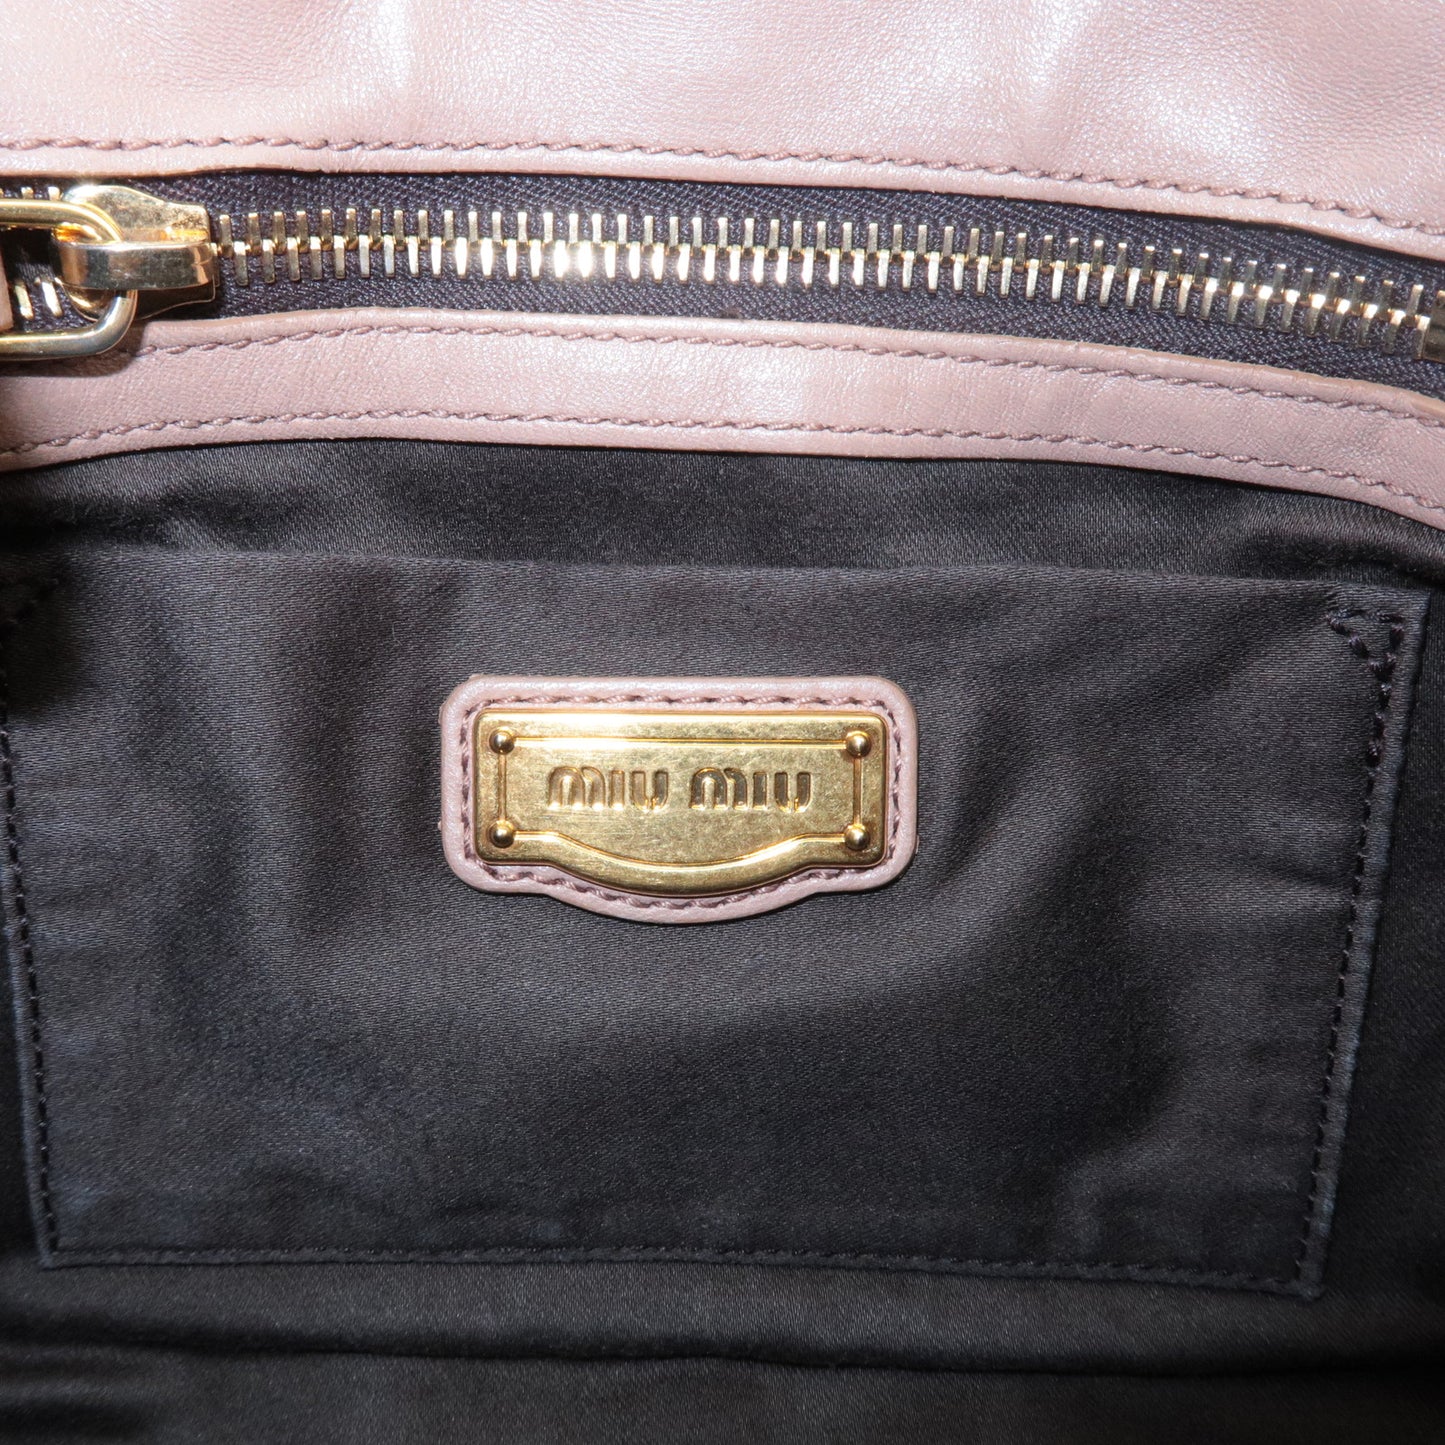 MIU MIU Matelasse Leather 2Way Bag Hand Bag Pink Beige